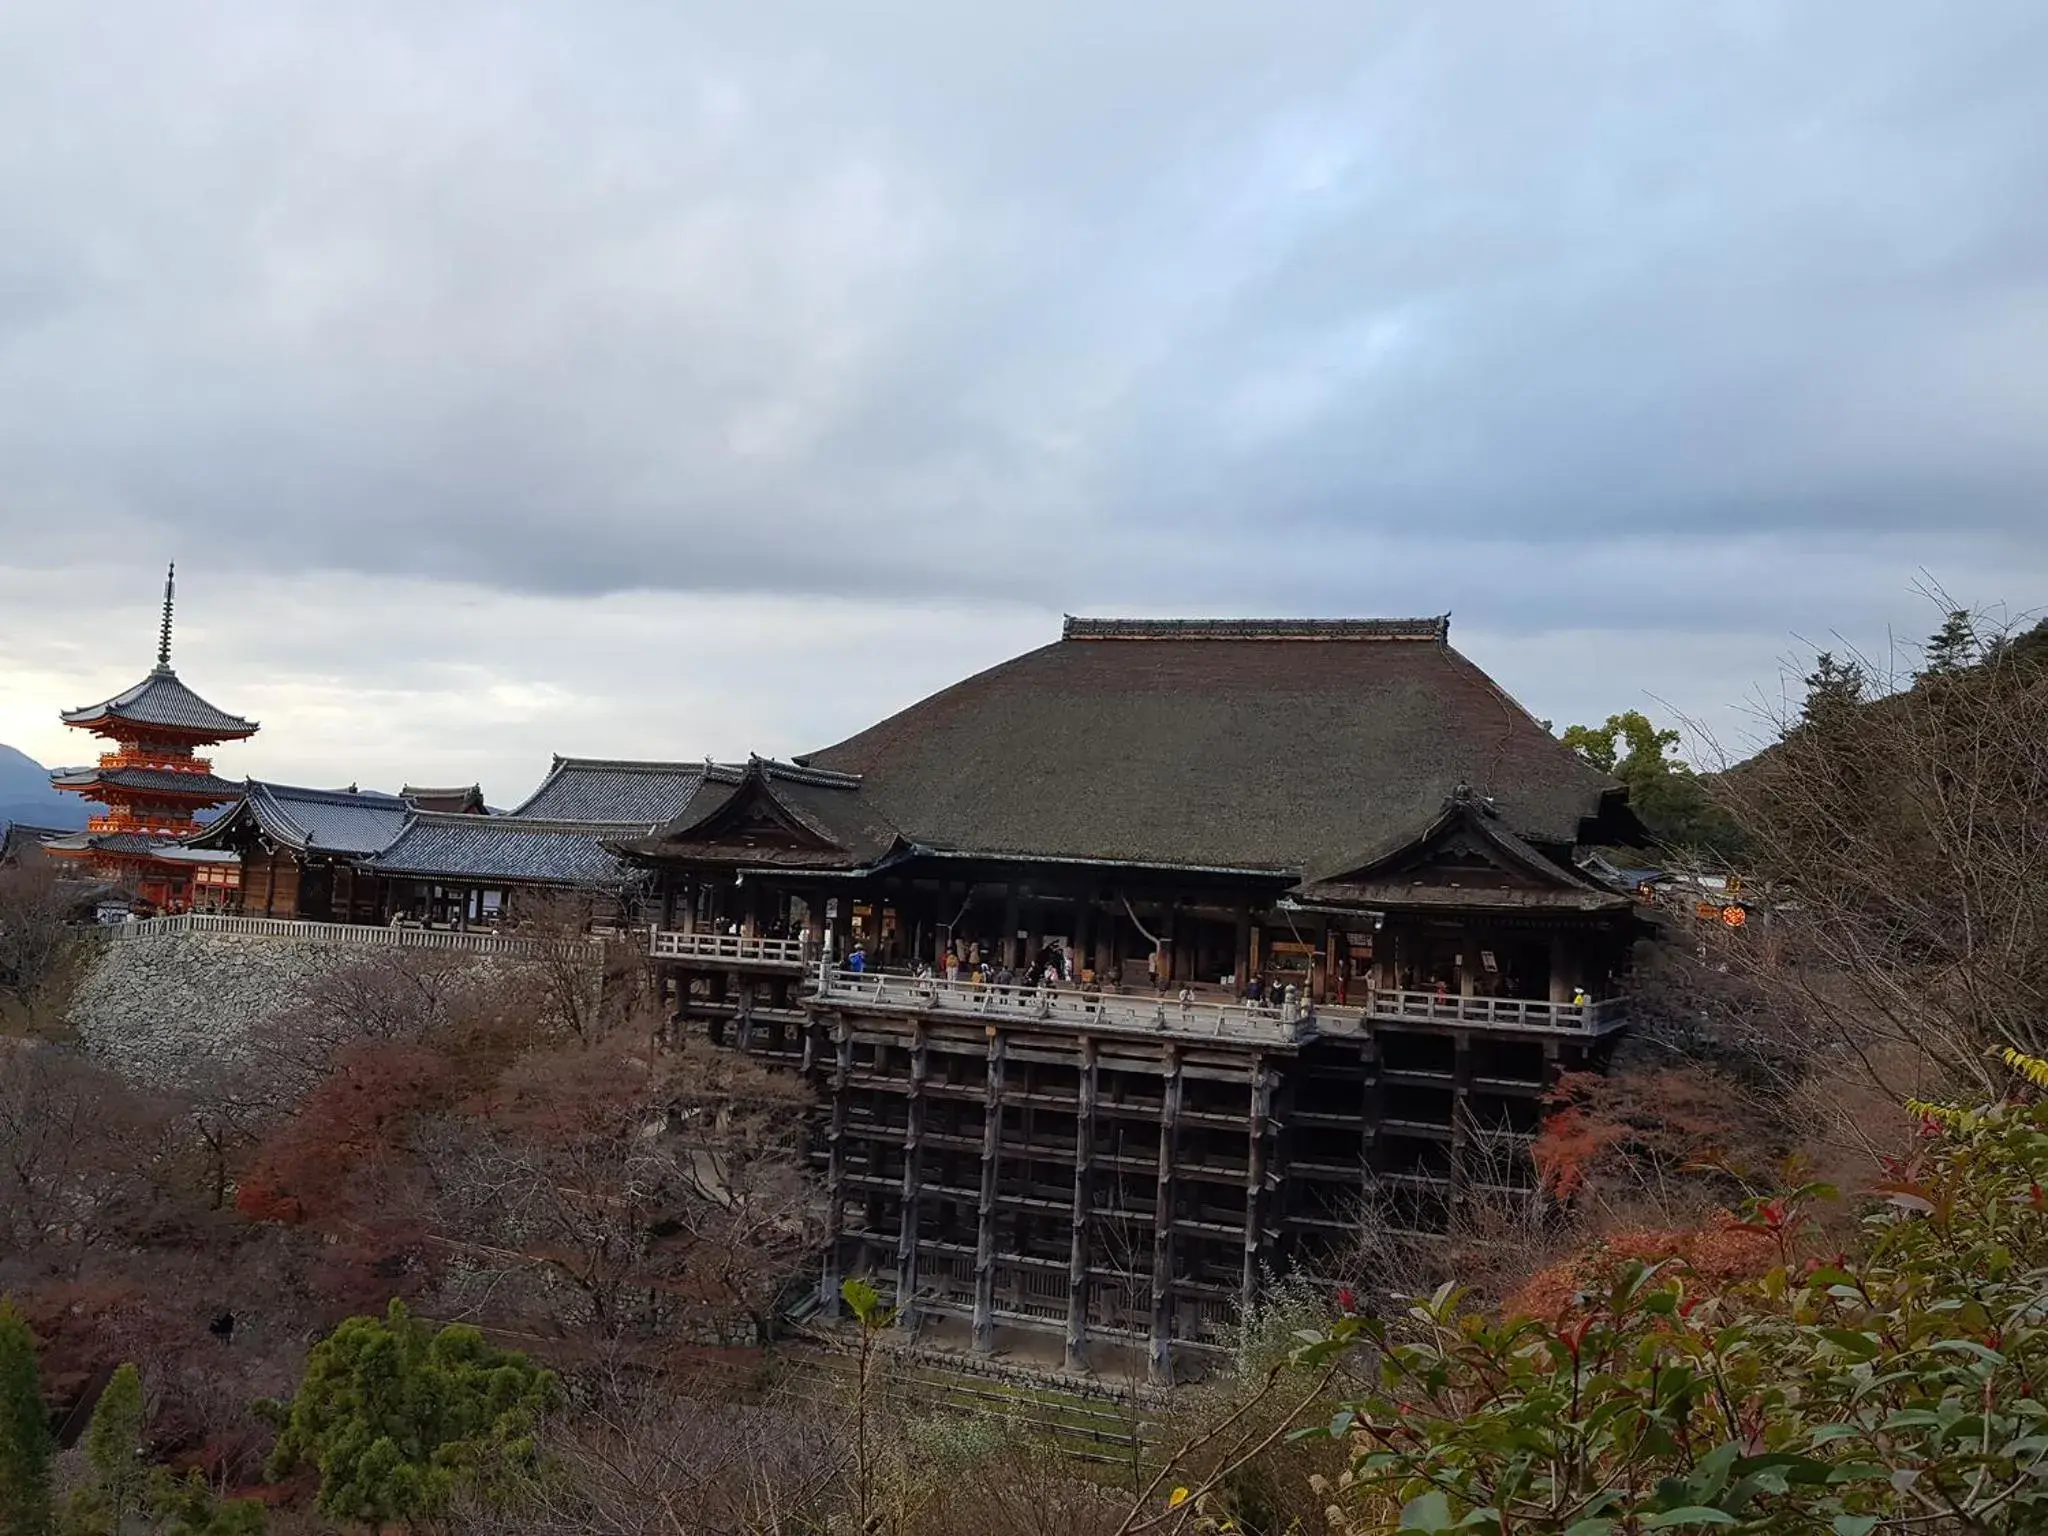 Nearby landmark, Property Building in Rak kiyomizu